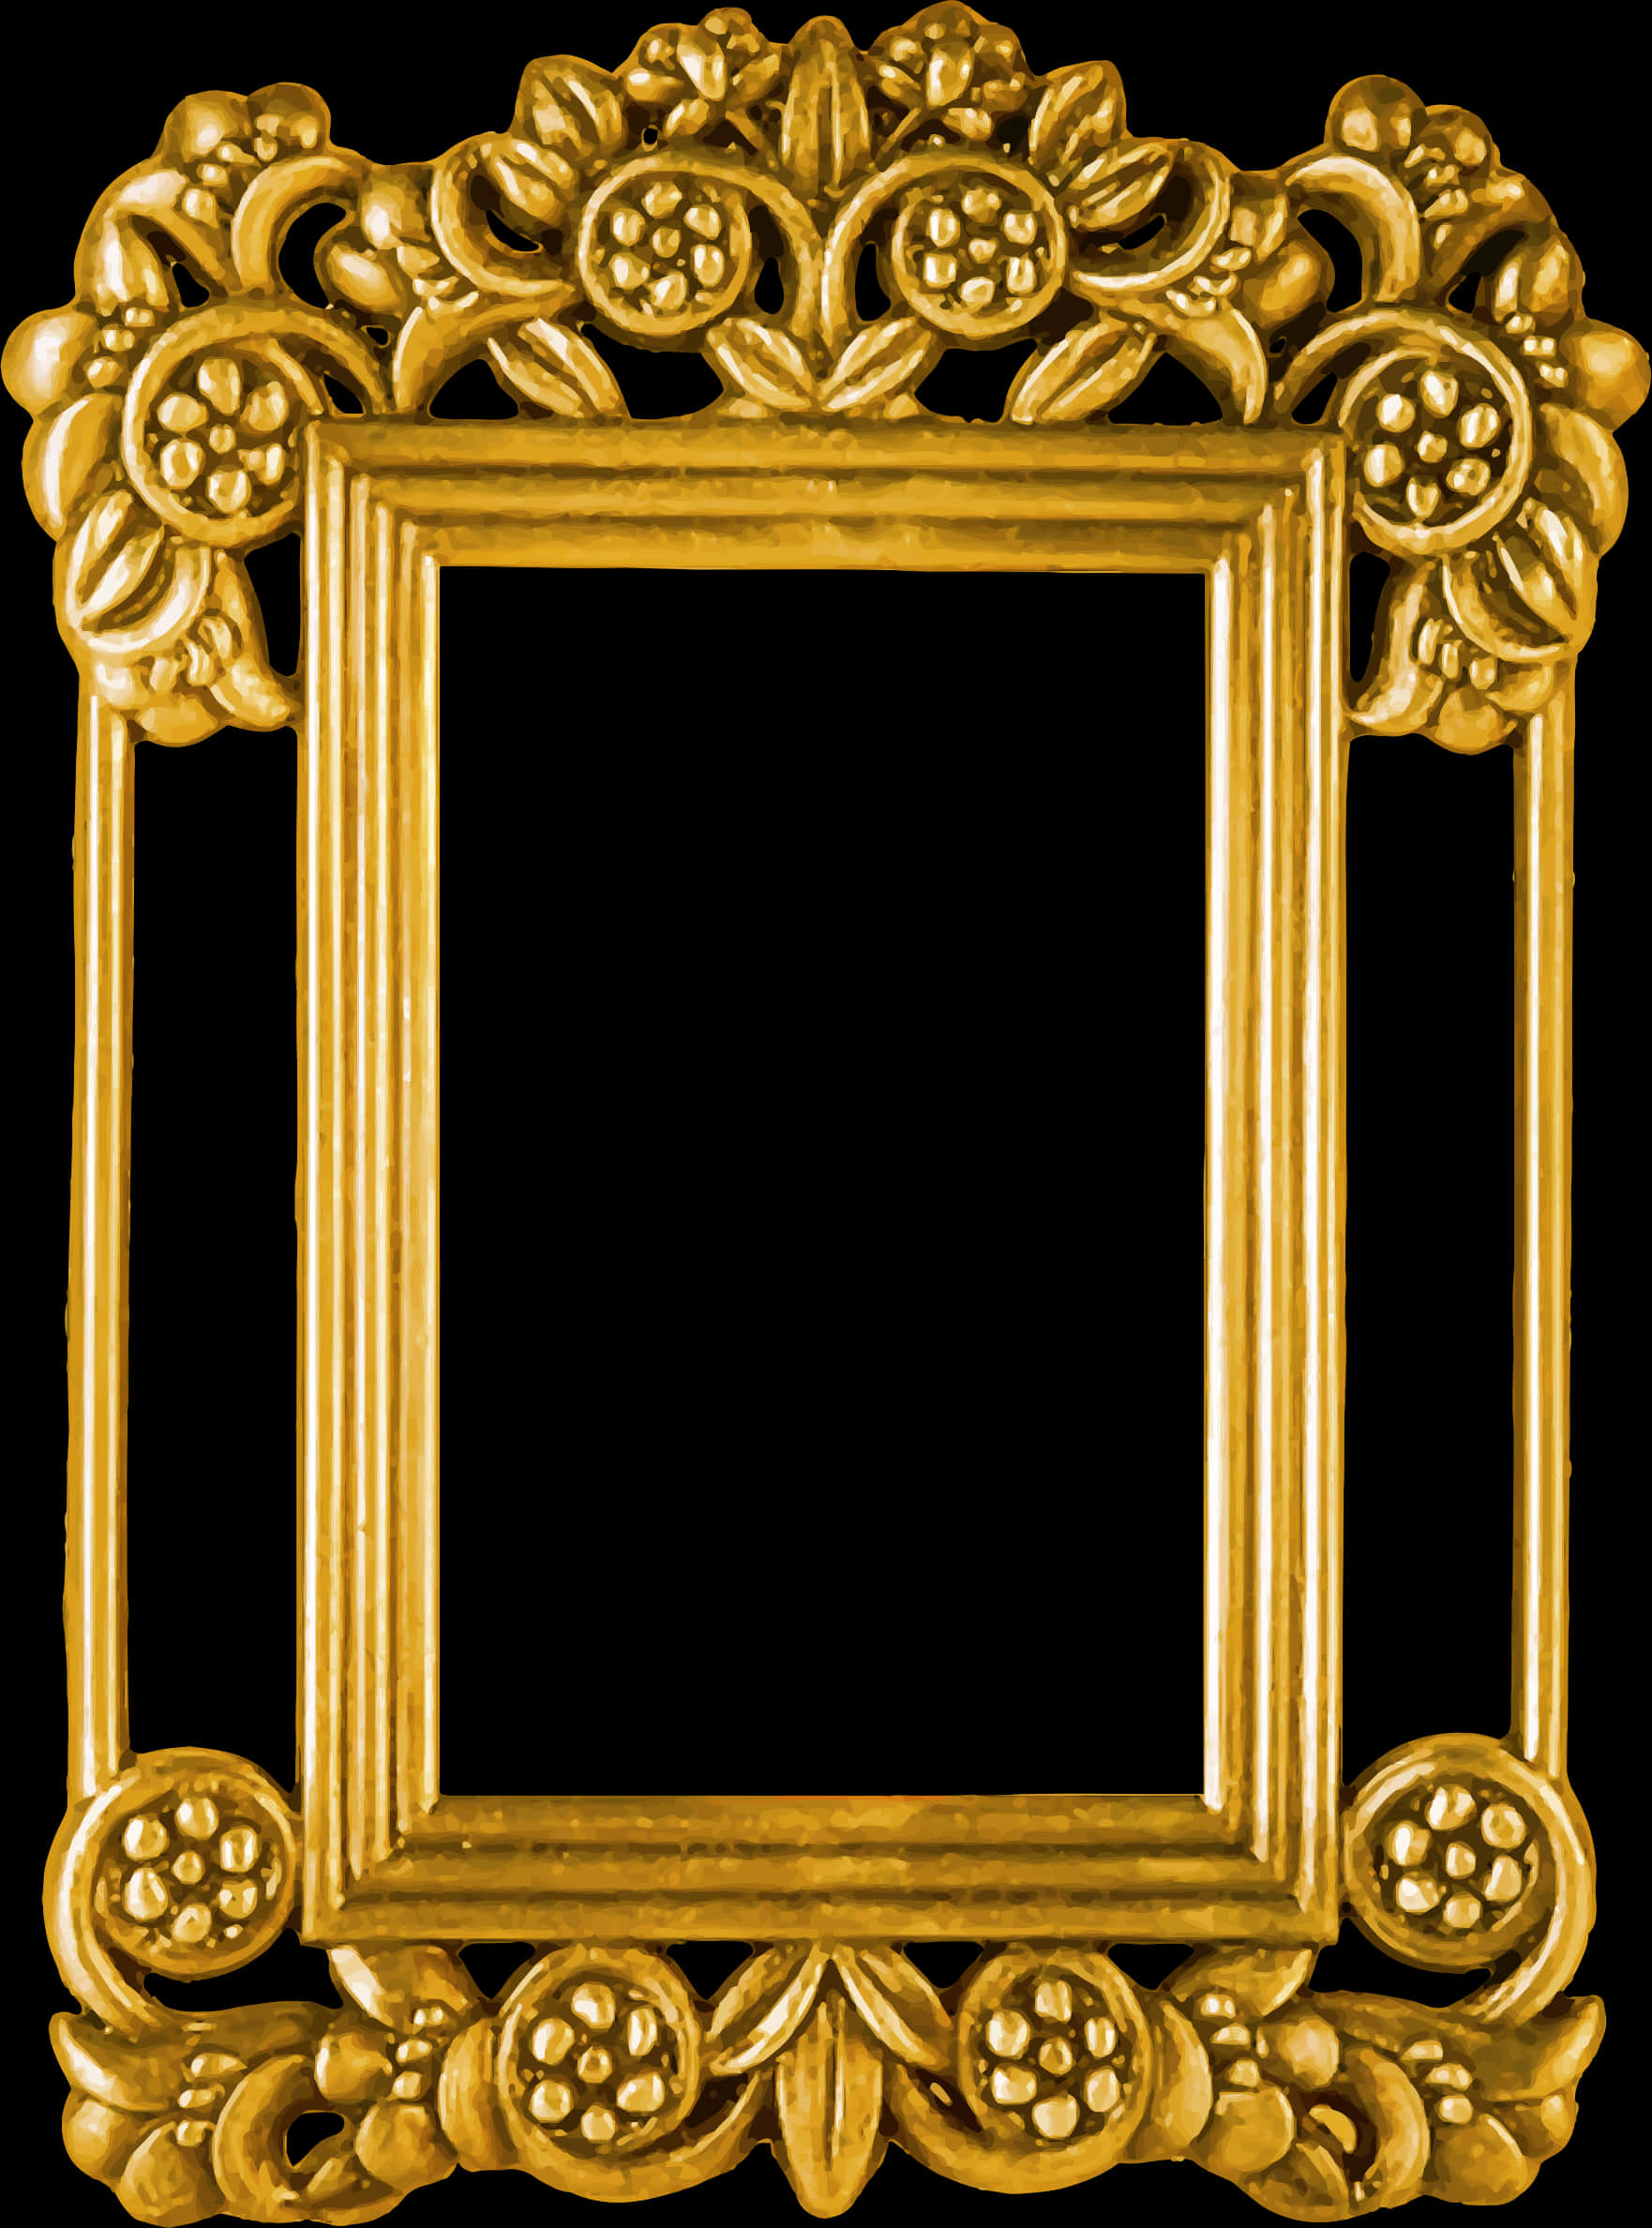 Ornate Golden Floral Frame PNG image